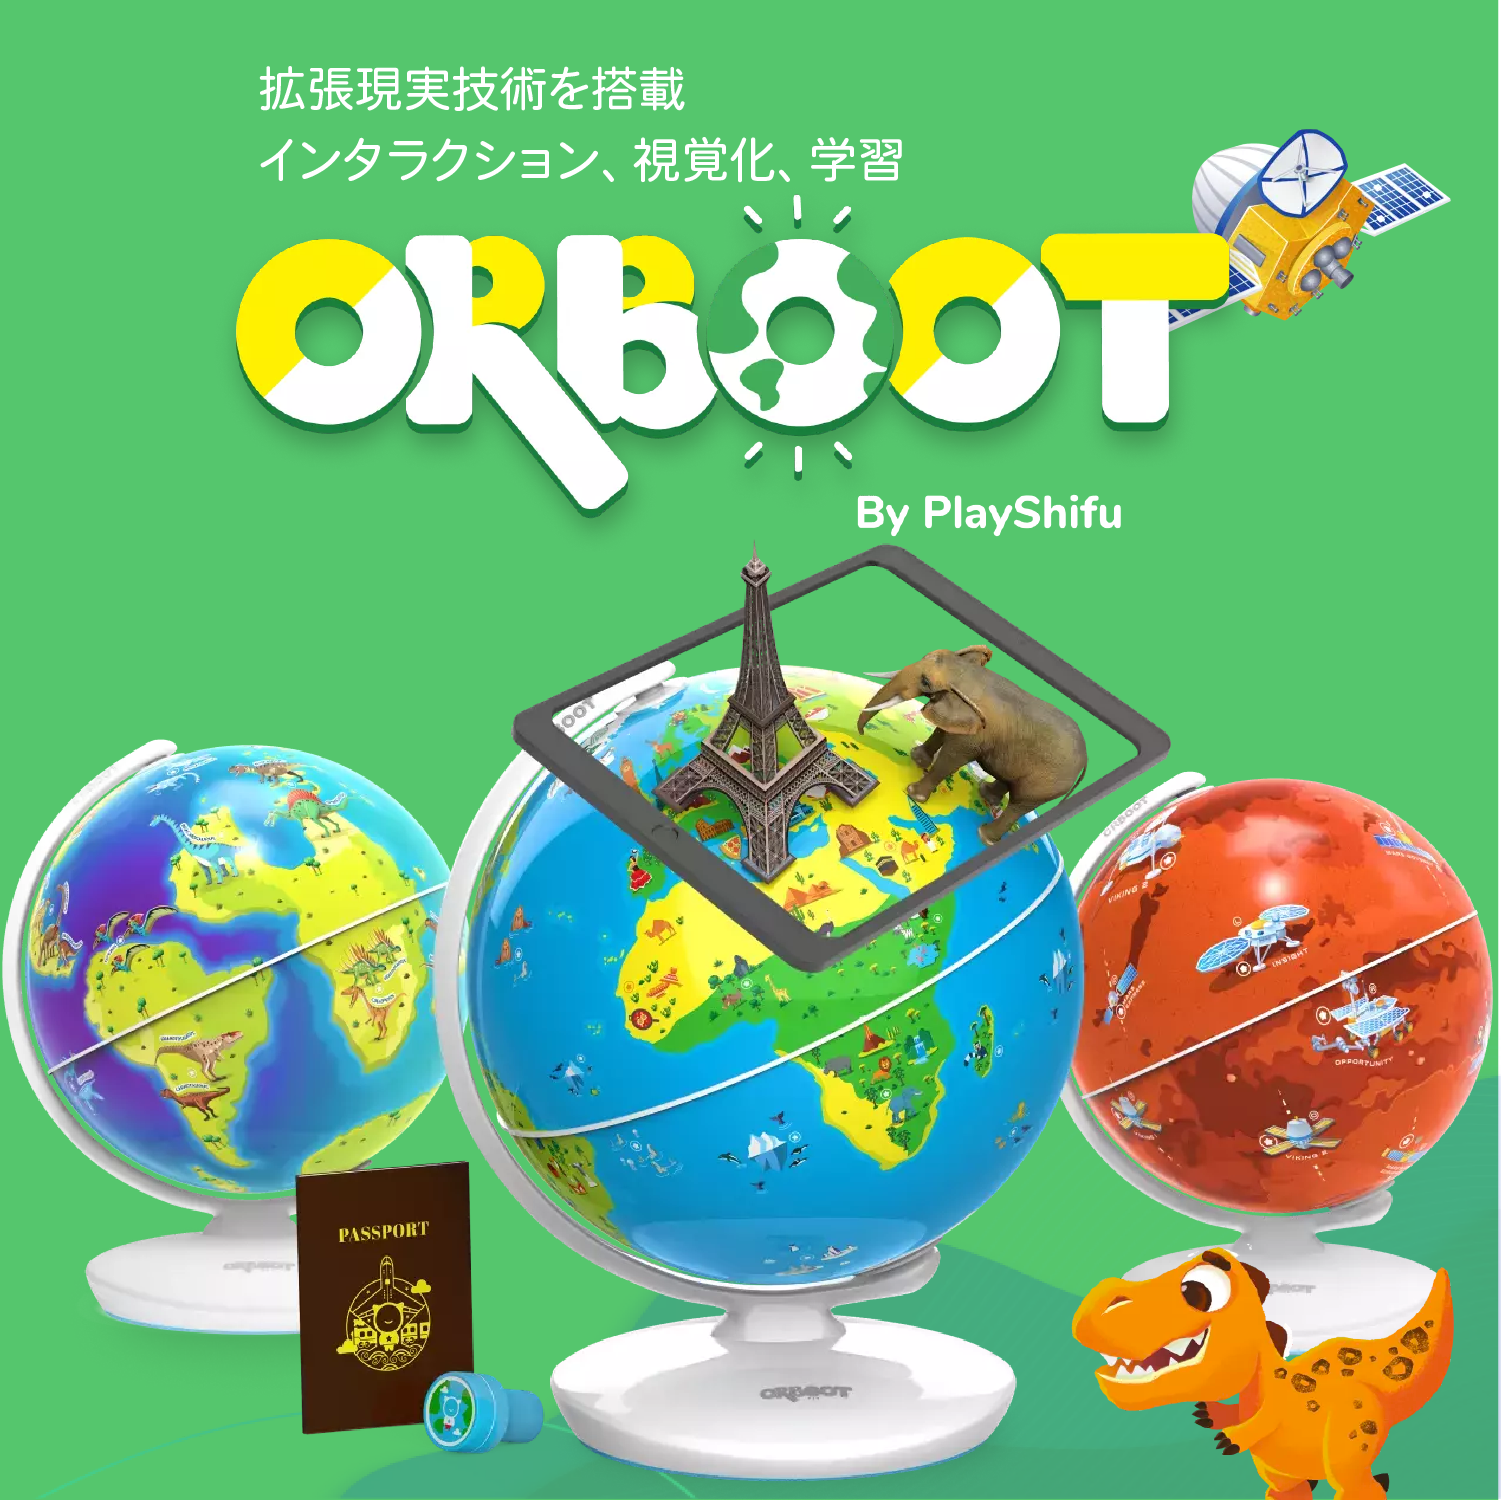 Orboot – Playshifu Japan